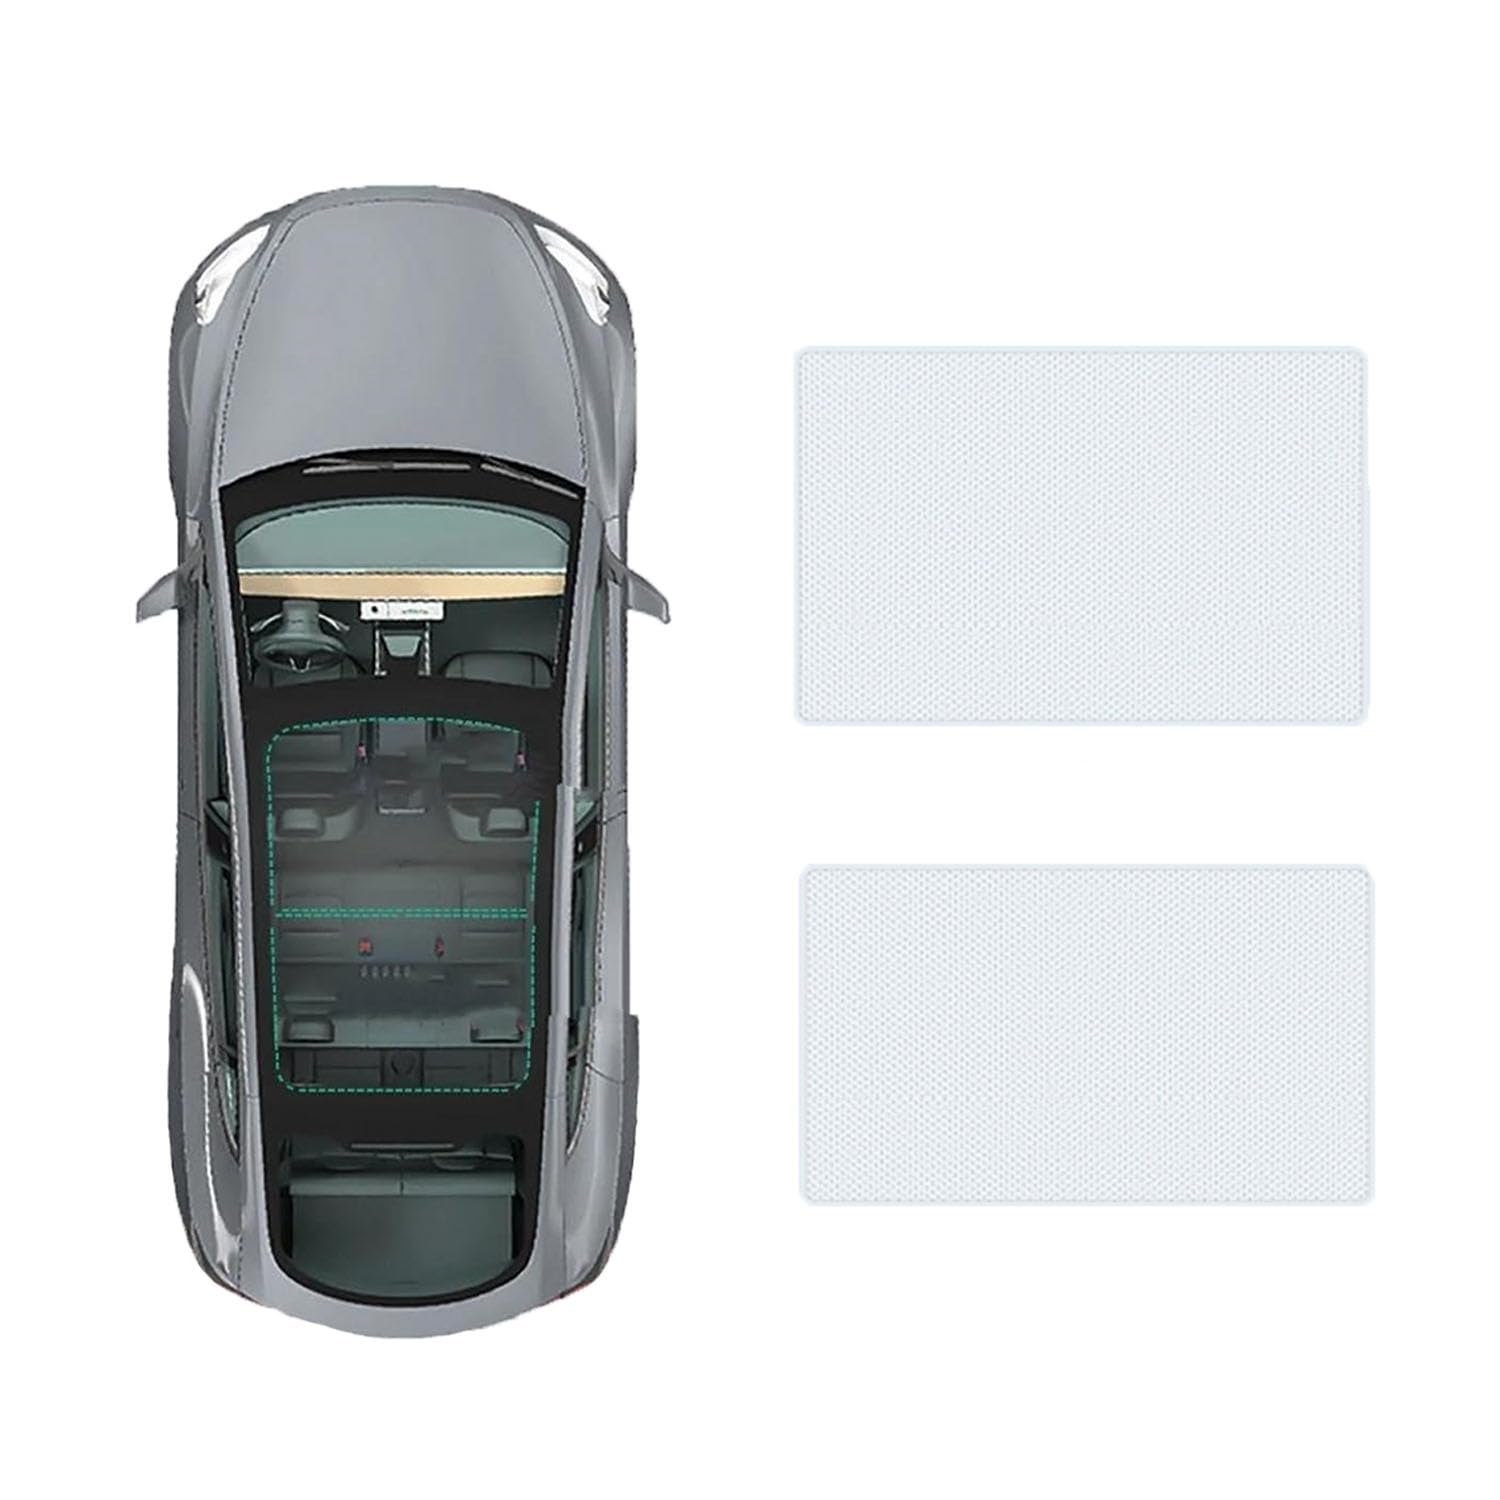 Auto-Schiebedach-Beschattung Für Audi Q6 2023-,Auto Schiebedach Sonnenschutz Dachfenster Dach Wärme Isolierung Beschattung Innen,A-Gray white regular Style von LiuROSE